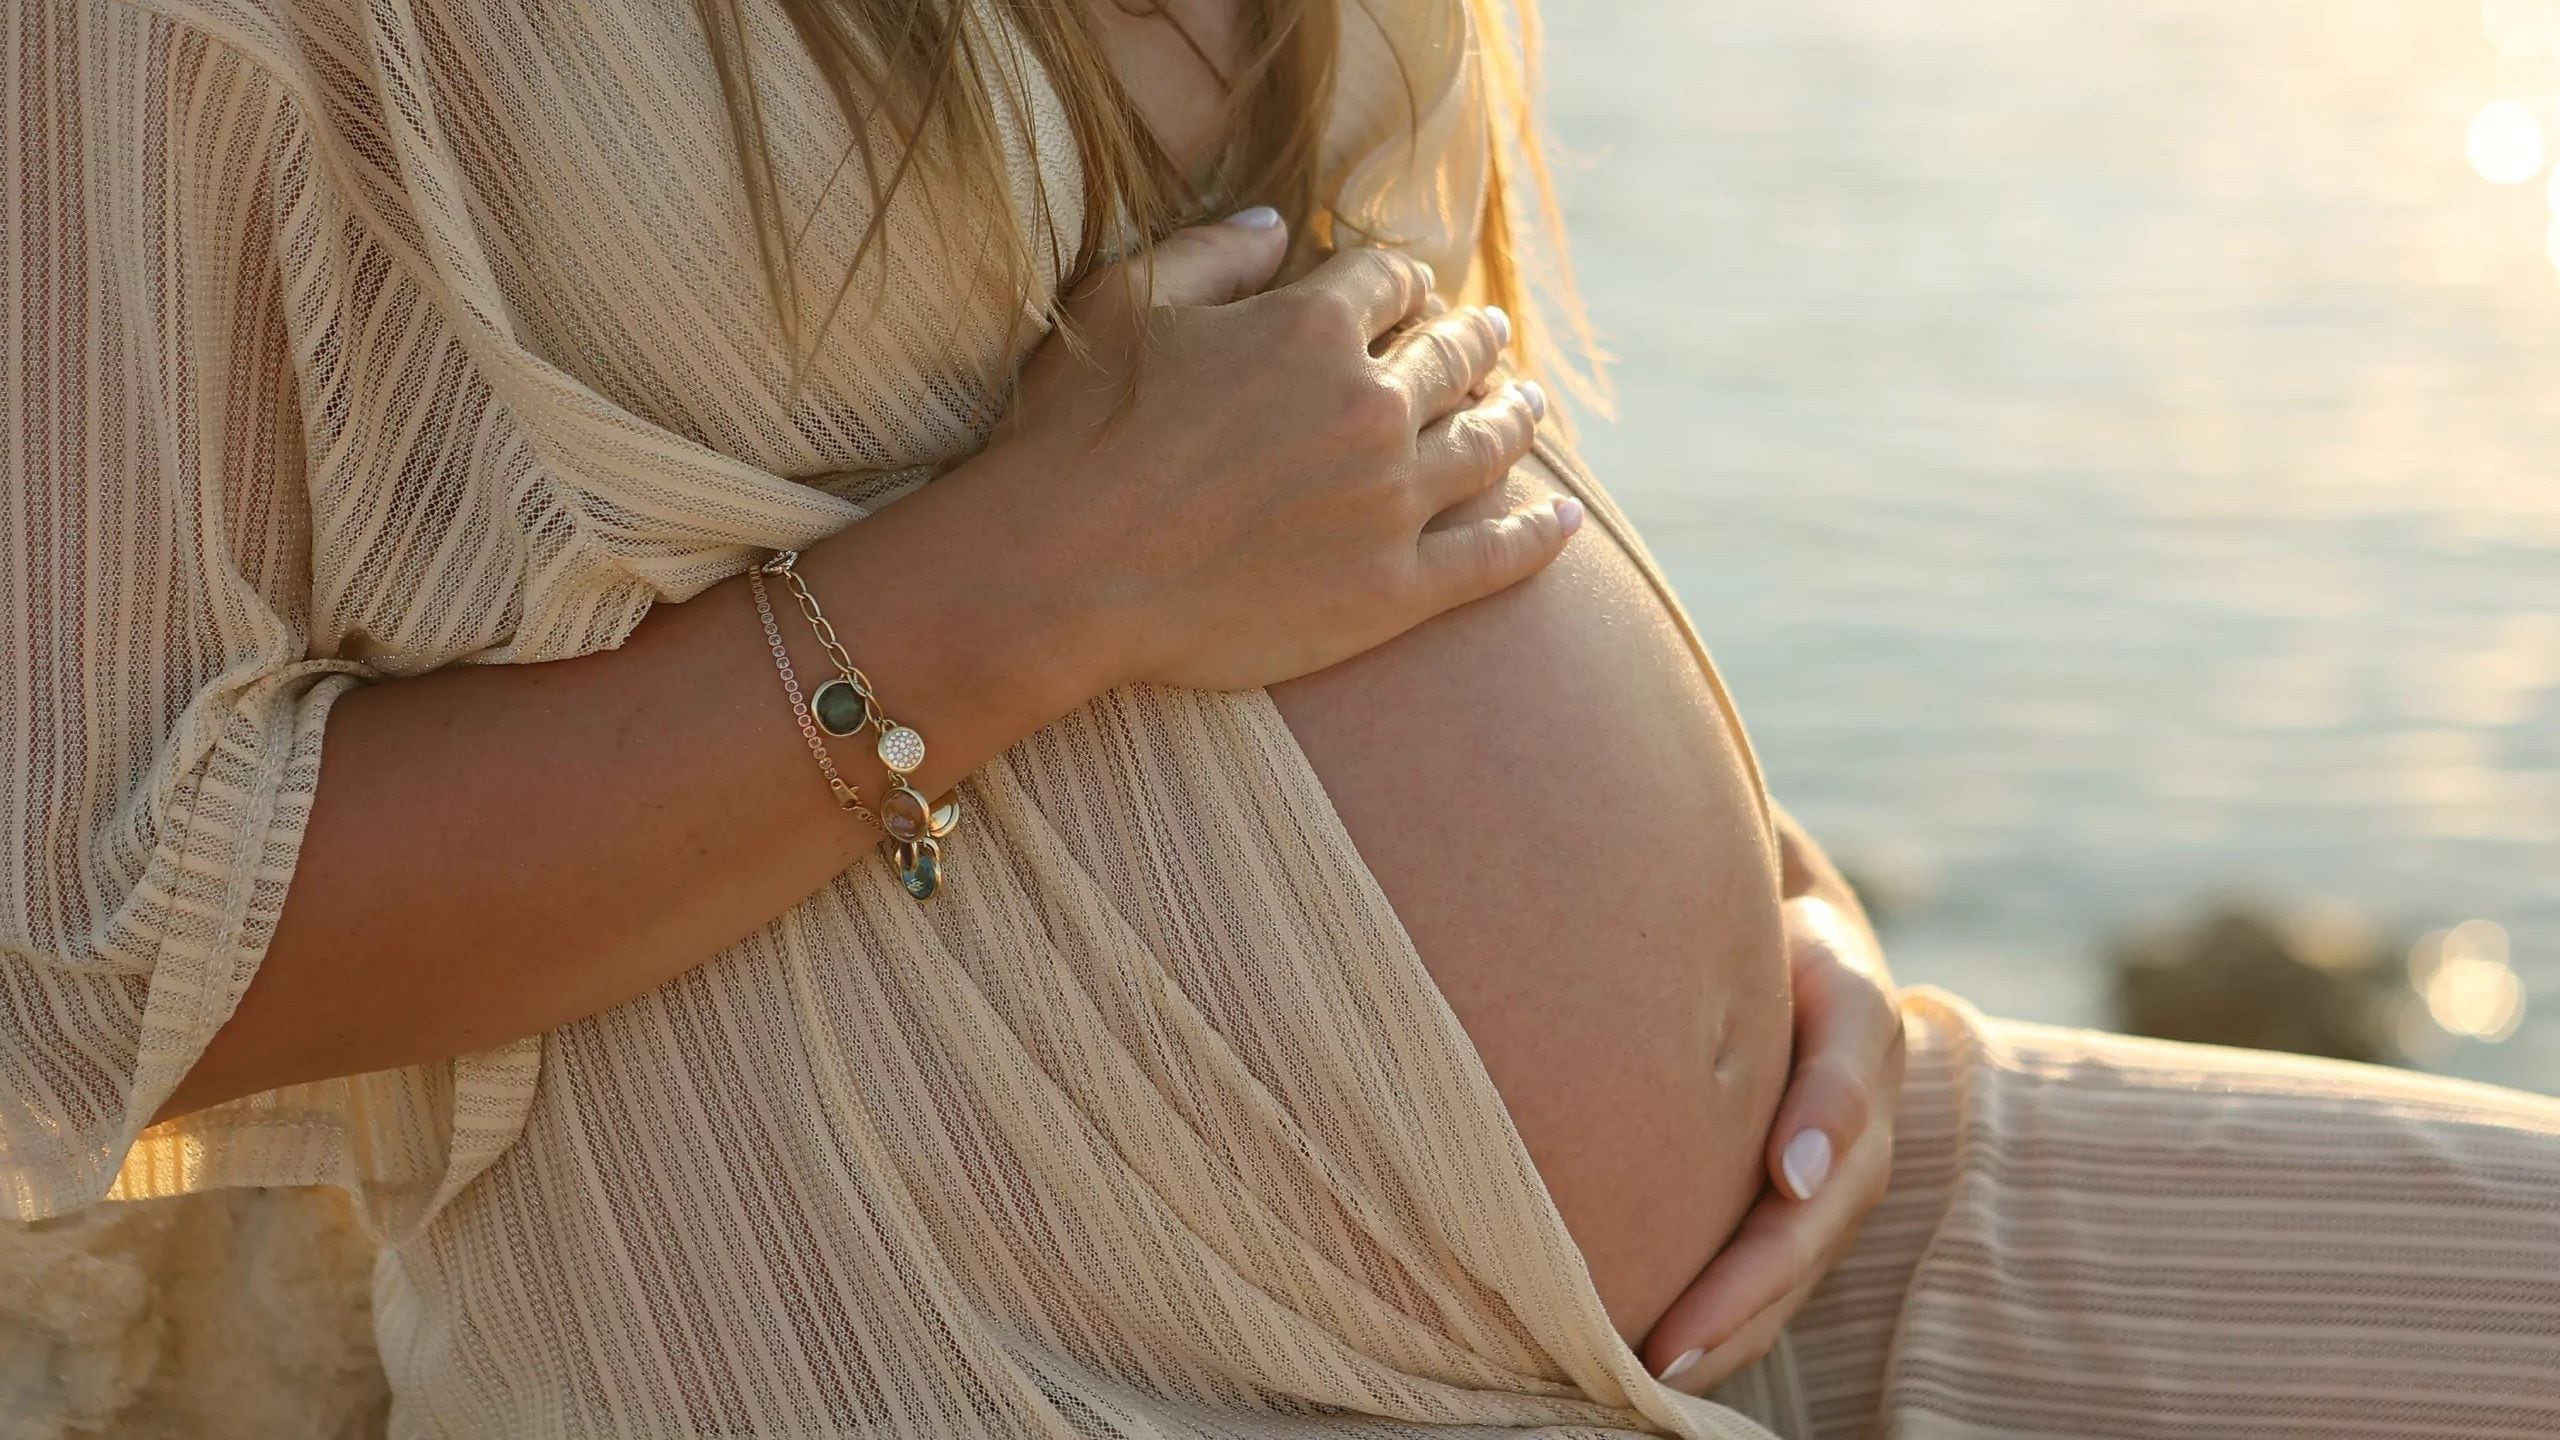 “La causa más frecuente del retardo de crecimiento intrauterino es un problema placentario, que ocurre cuando, por algún motivo, la placenta no nutre bien al feto", dijo la doctora Ciaccio